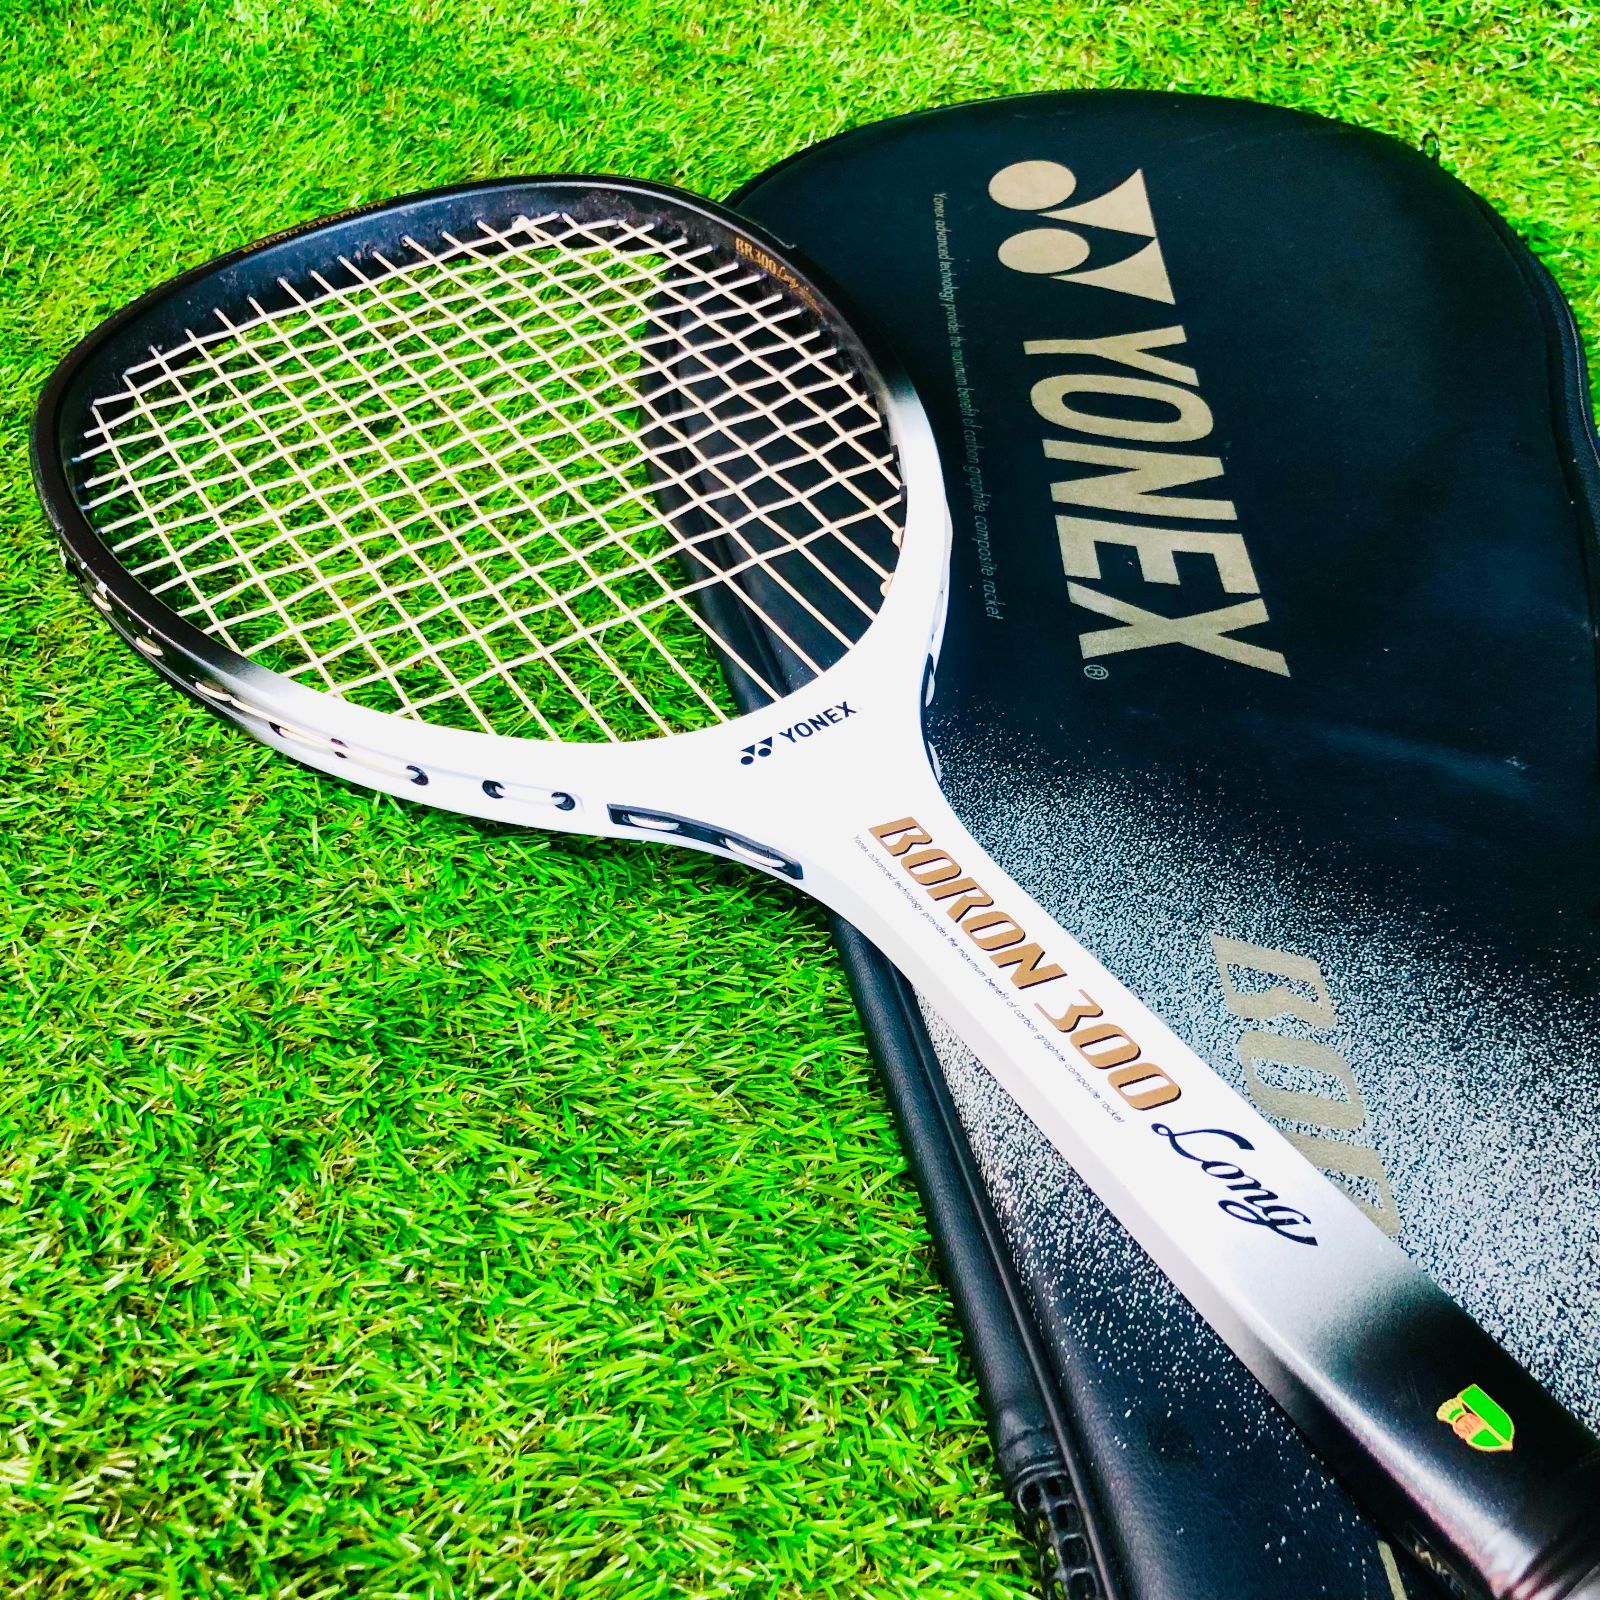 ボロン300 ファイナルエディション 軟式テニスラケット - テニス